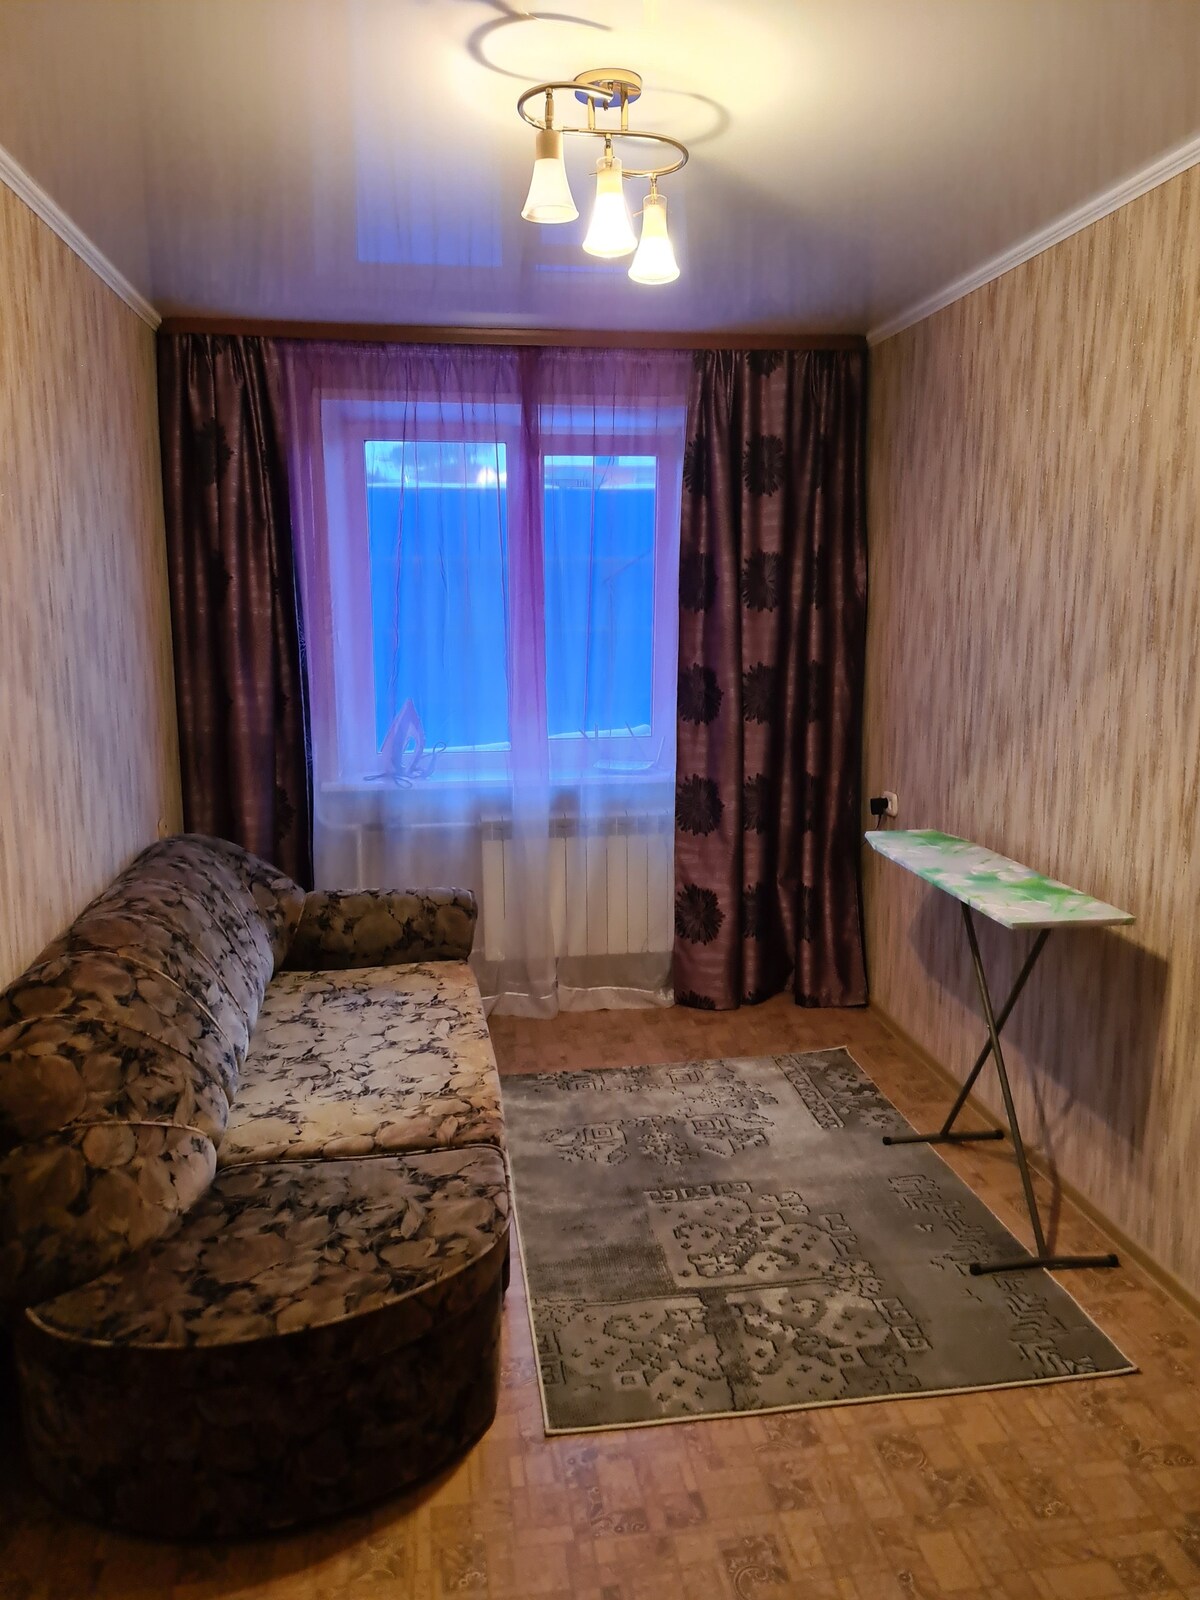 отличная квартира по доступной цеге в г. Южно-Сахалинске в непосредственной близости от горнолыжного курорта "Горный Воздух"